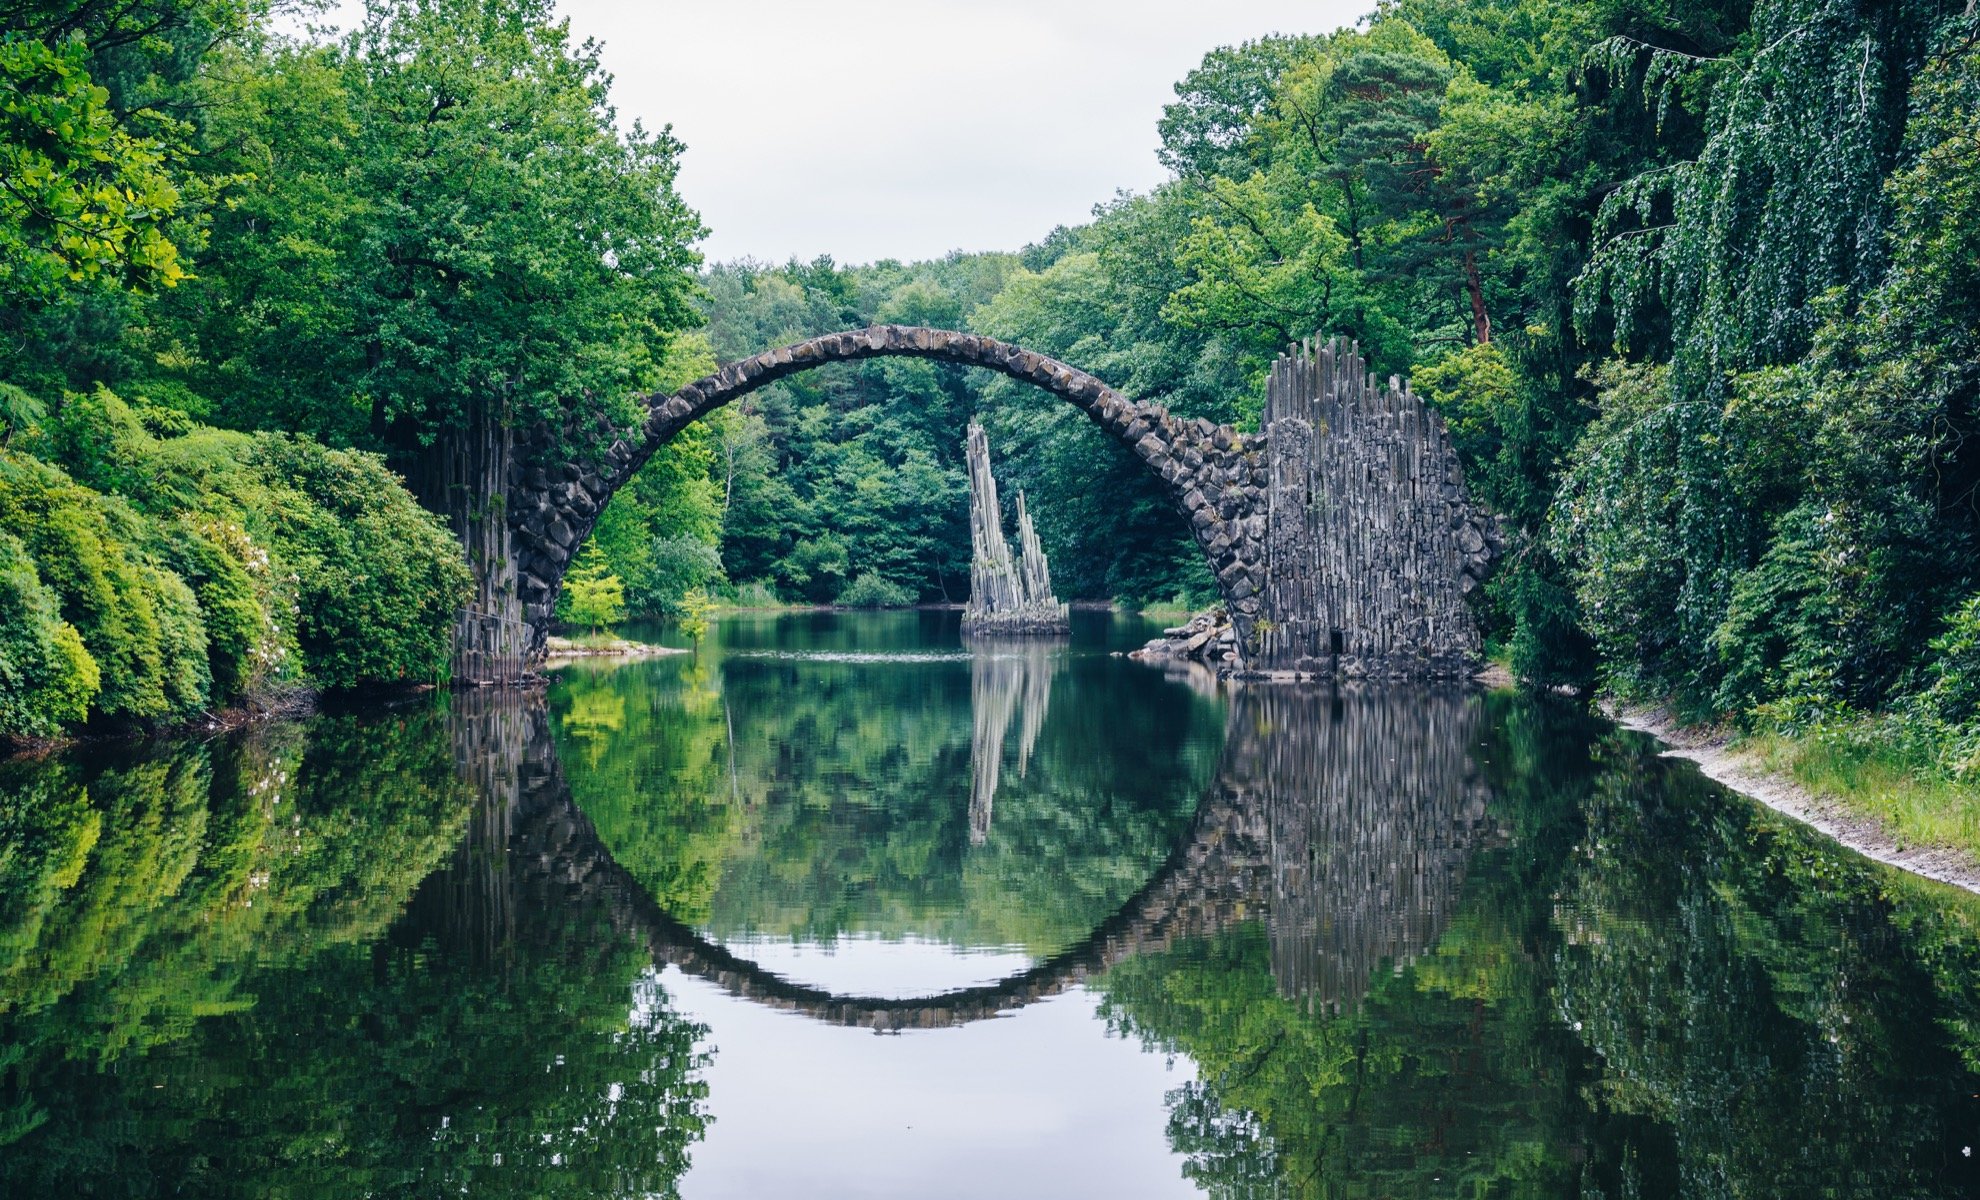 Conoce a Rakotzbrucke, el impresionante Puente del Diablo de Stone de Alemania - 13